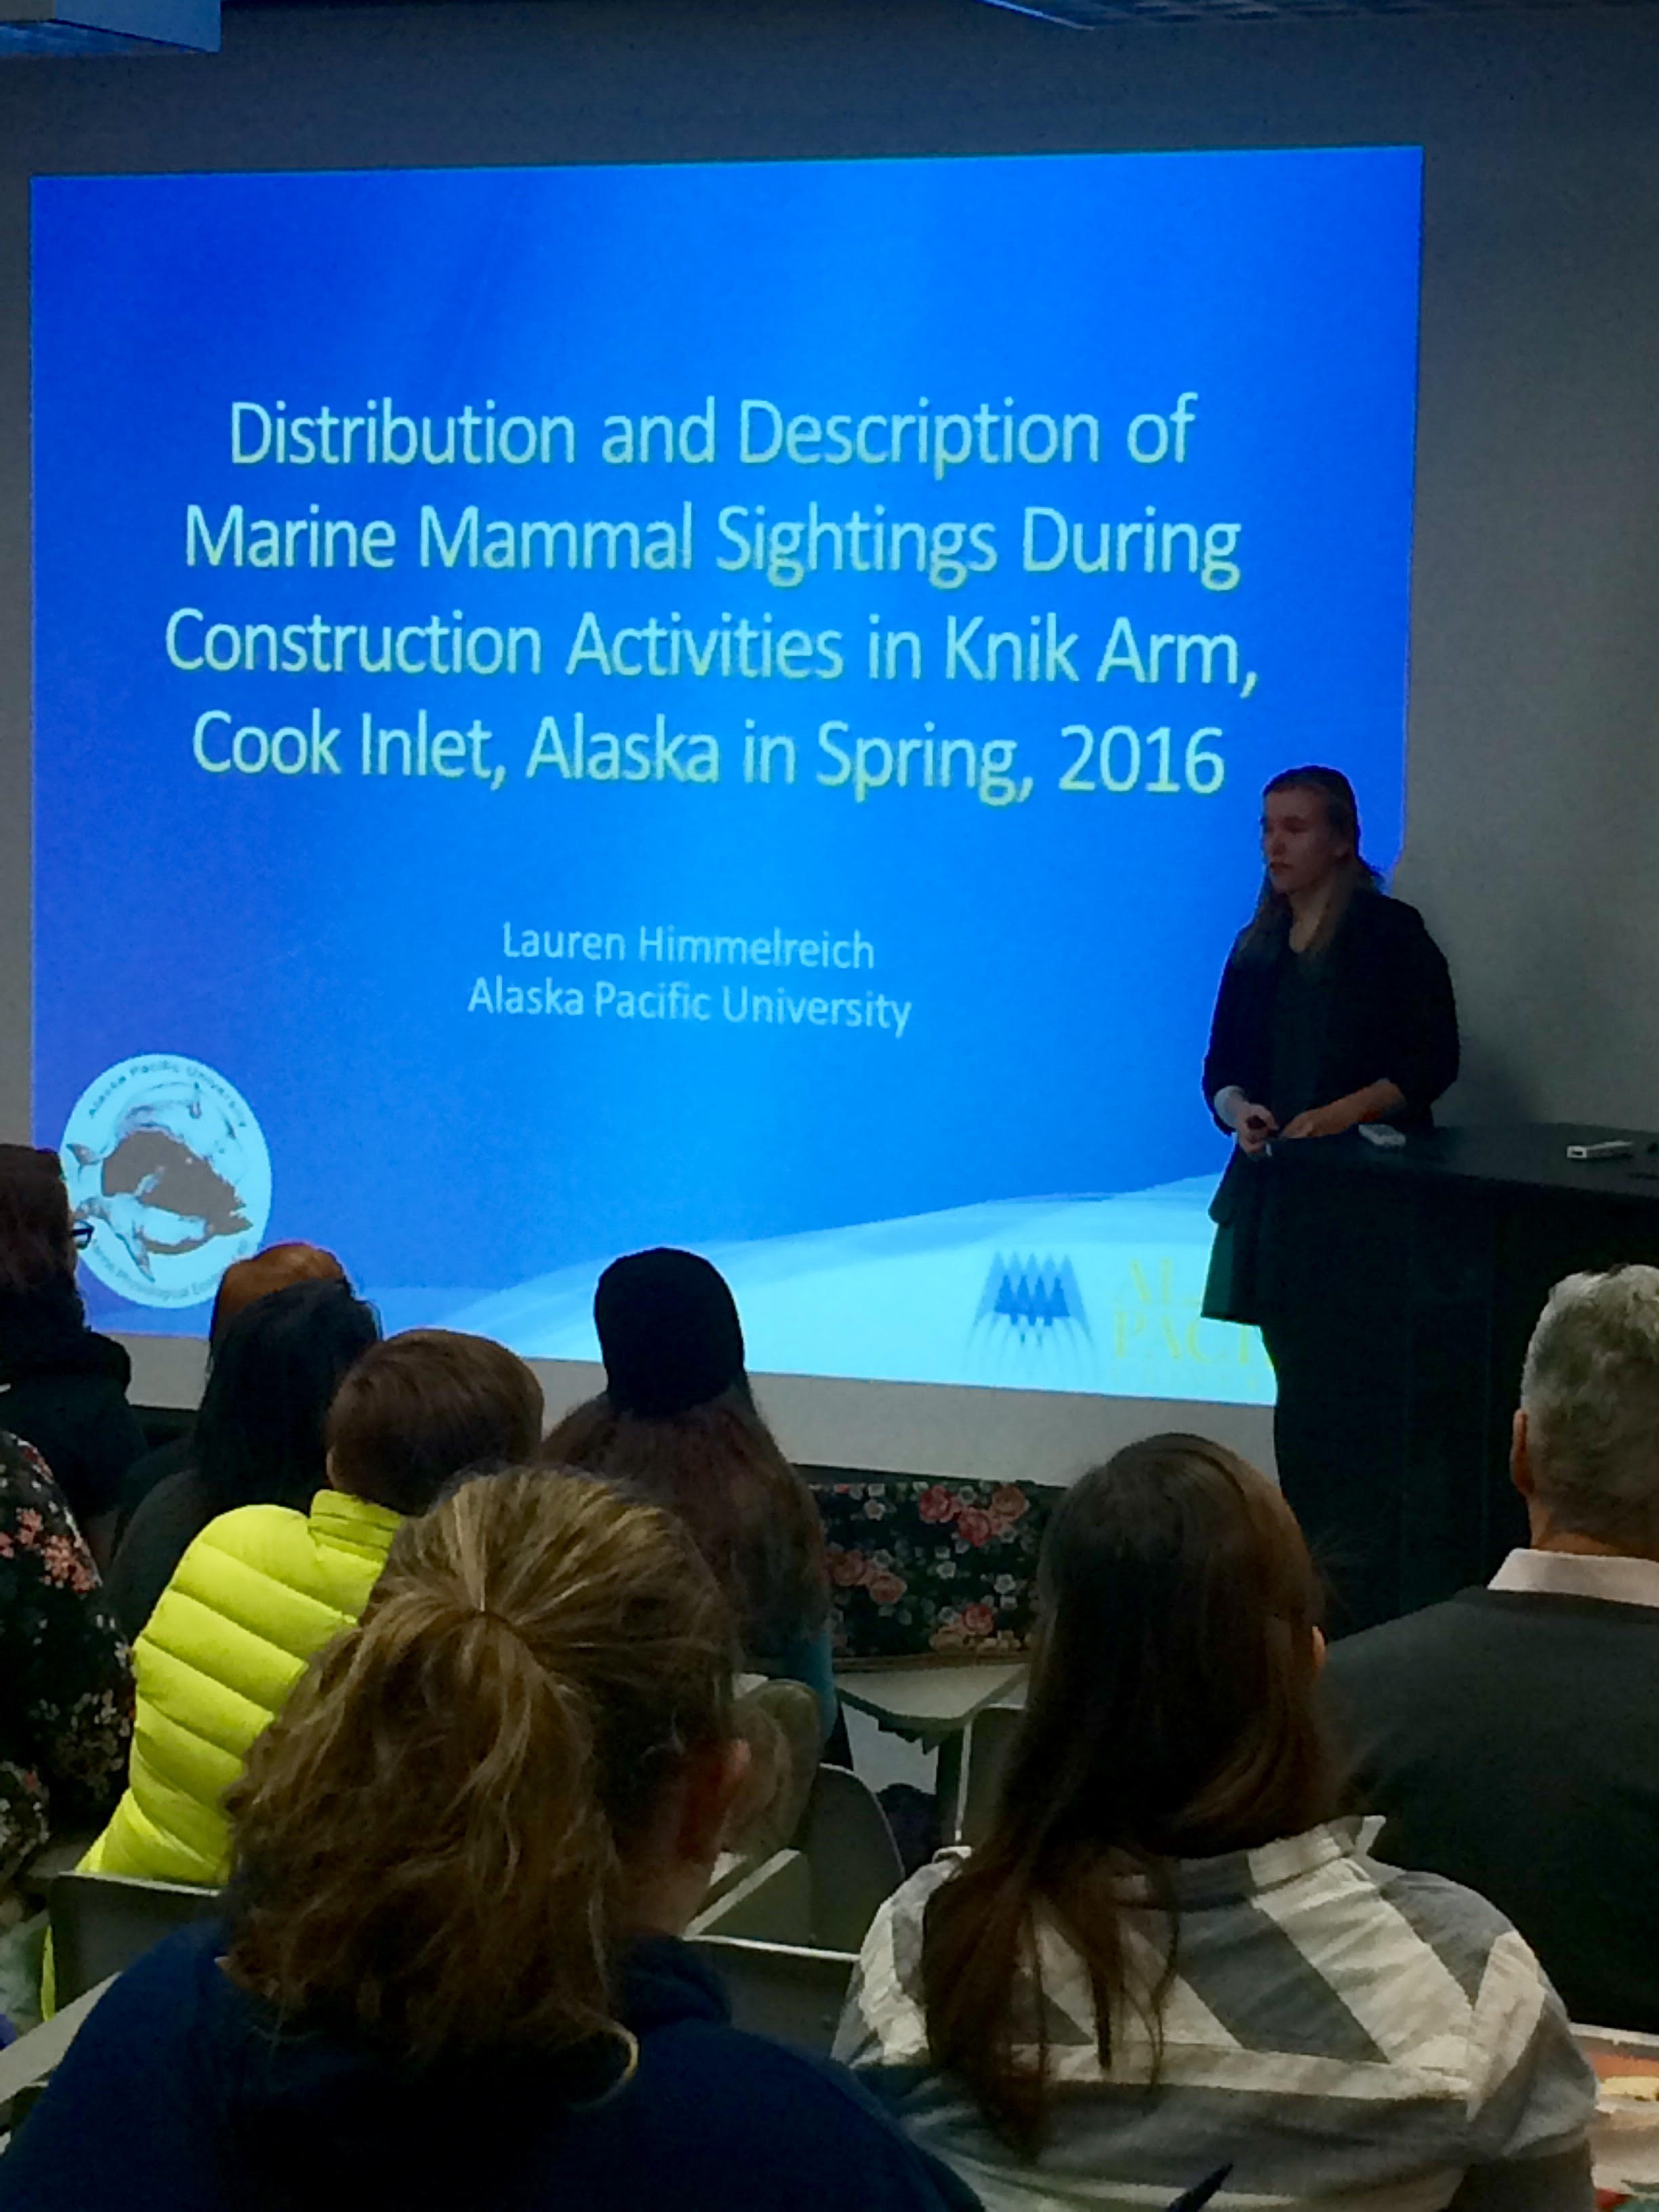 Lauren Himmelreich giving presentation at APU